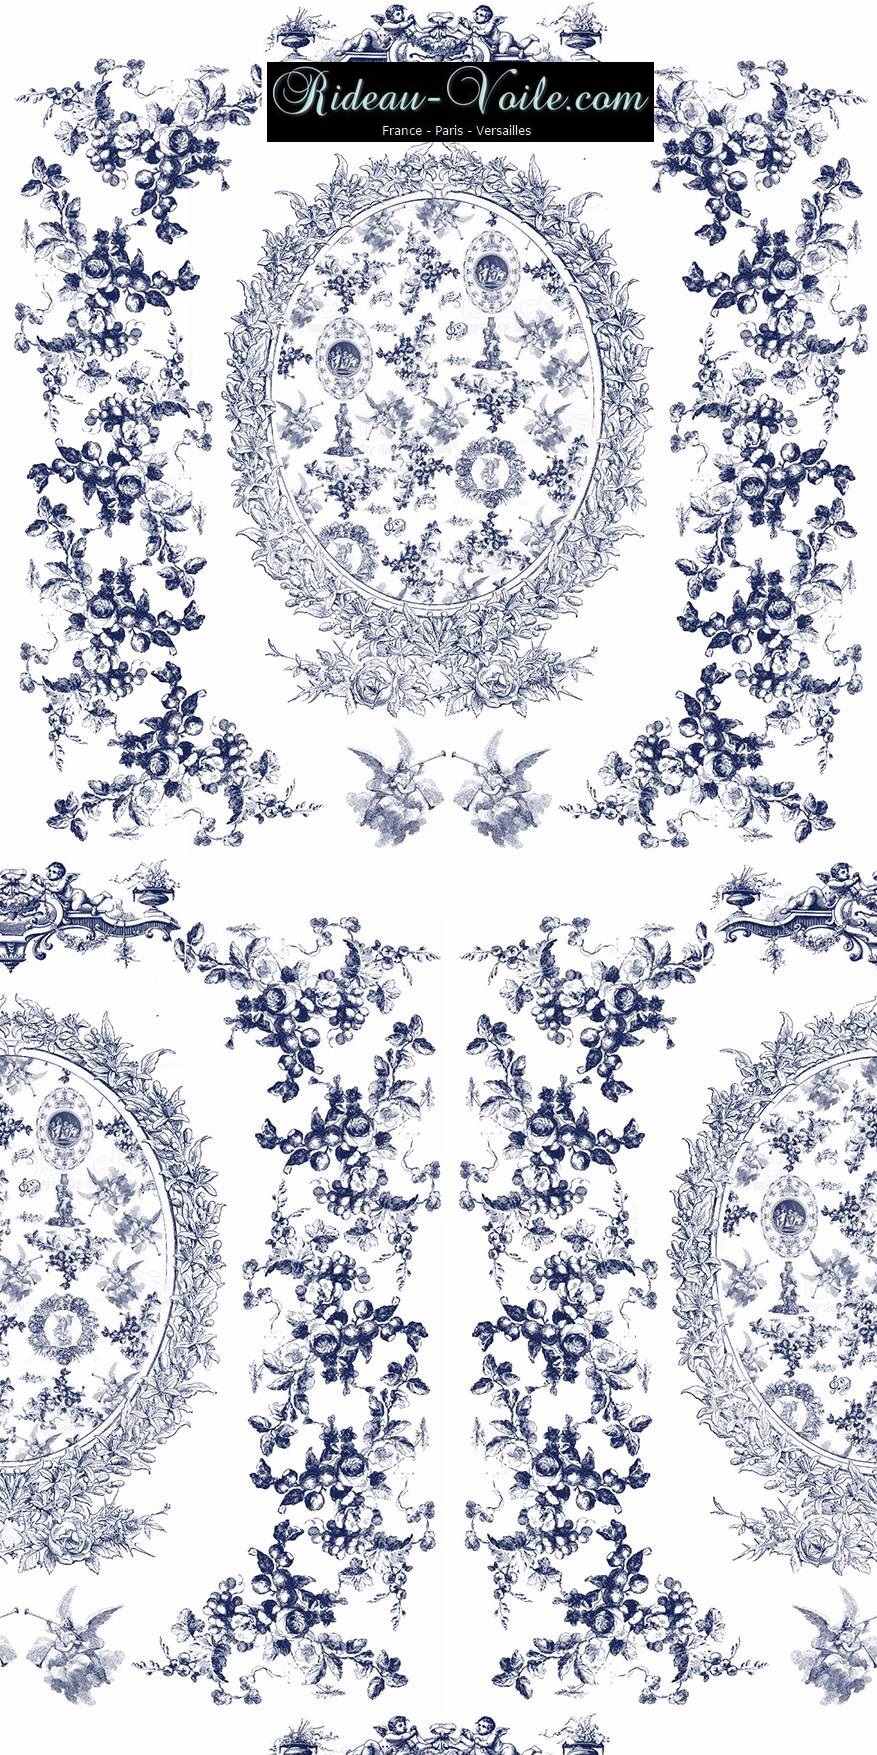 toile de jouy au mètre tissu Toile ameublement tapisserie textile agencement Paris Versailles haut de gamme french fabric meter tapestry upholstery home pattern  style Empire Yvelines motif imprimé bleu